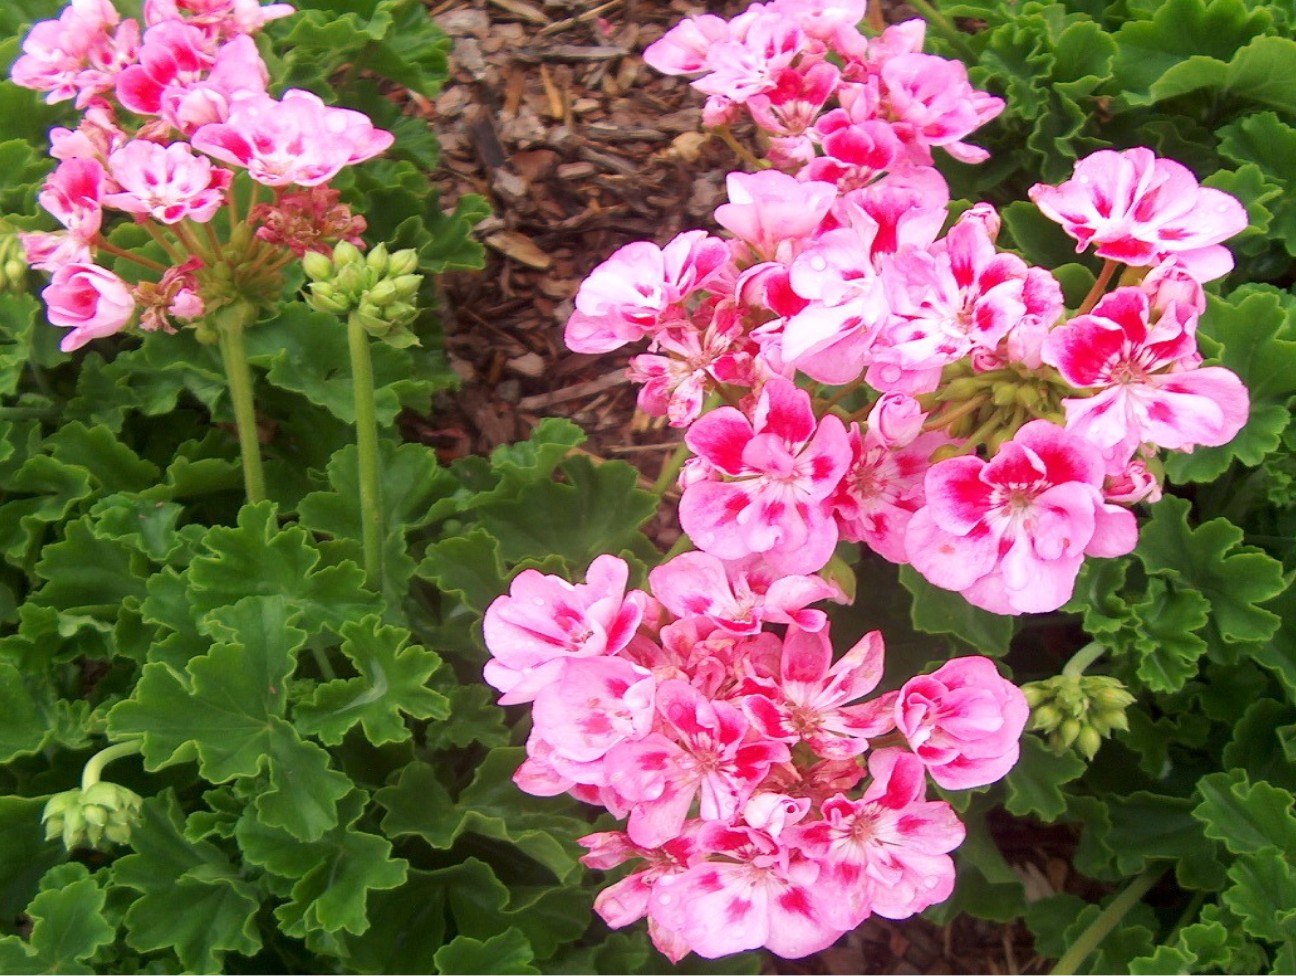 Pelargonium hortorum 'Allure Light Pink'  / Allure Hot Pink Geranium